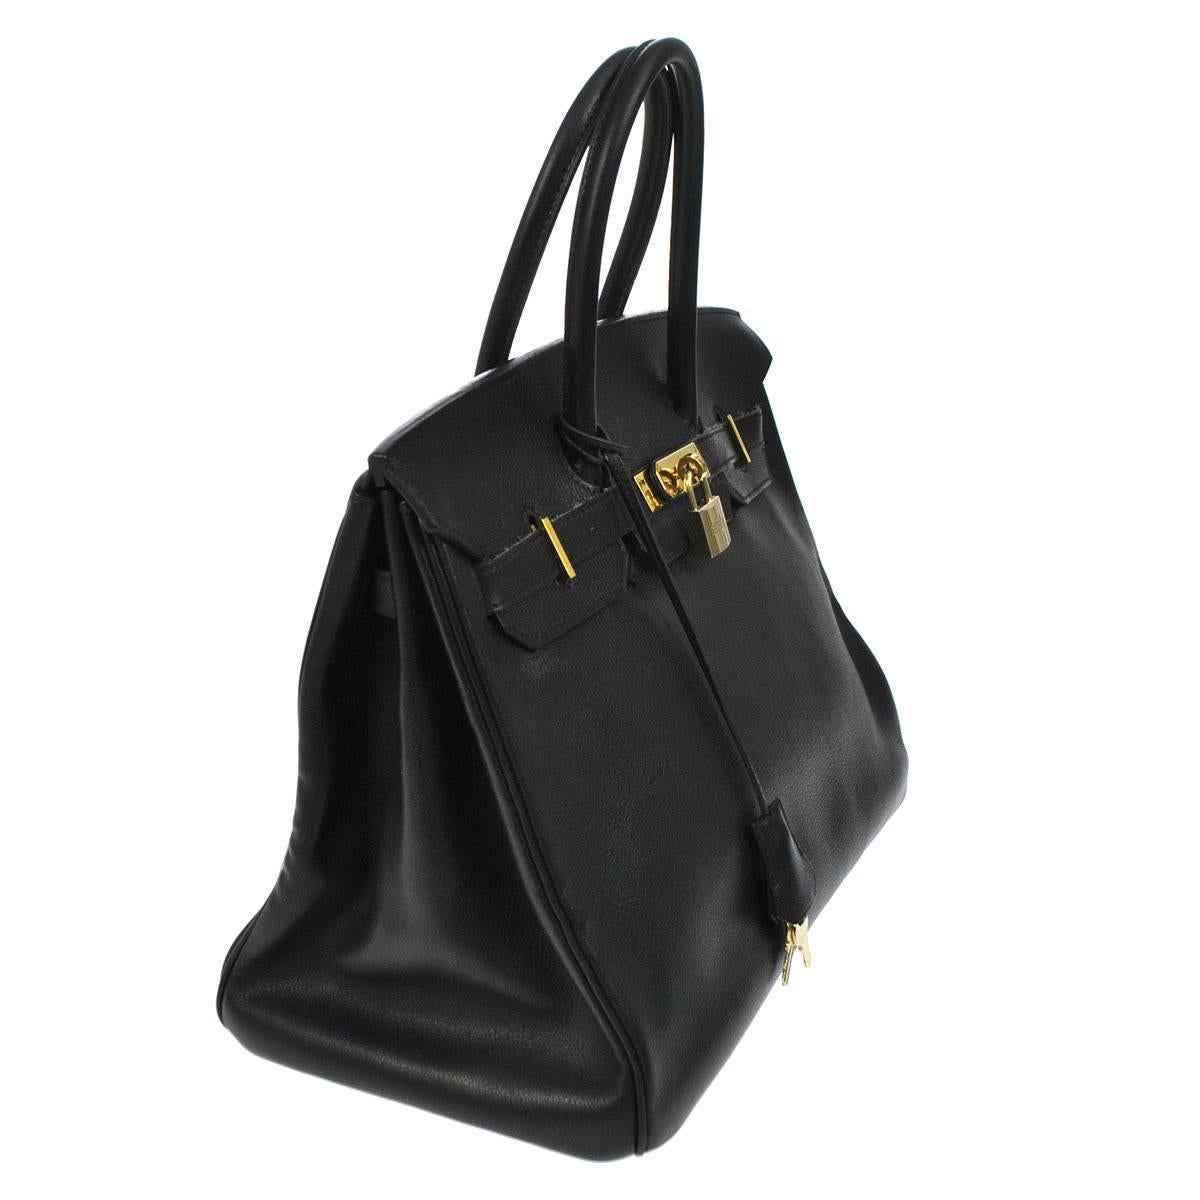 Women's Hermes 35 Black Leather Gold Carryall Tote Top Handle Satchel Shoulder Bag